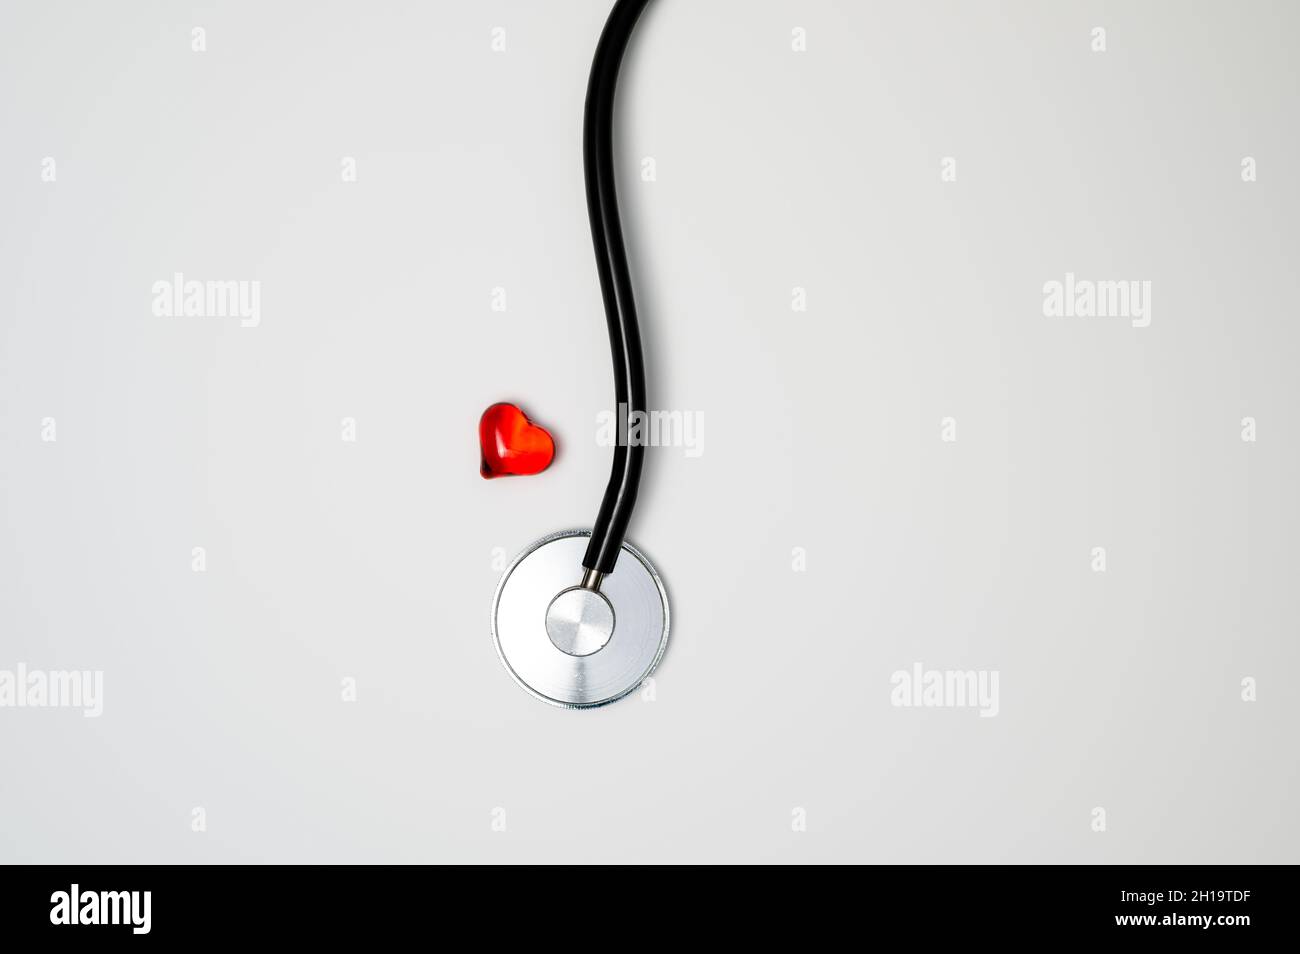 Health Care oder Health Check Konzept: Rotes Glas Herz neben einem medizinischen Stethoskop mit Bruststück und Schlauch. Stockfoto